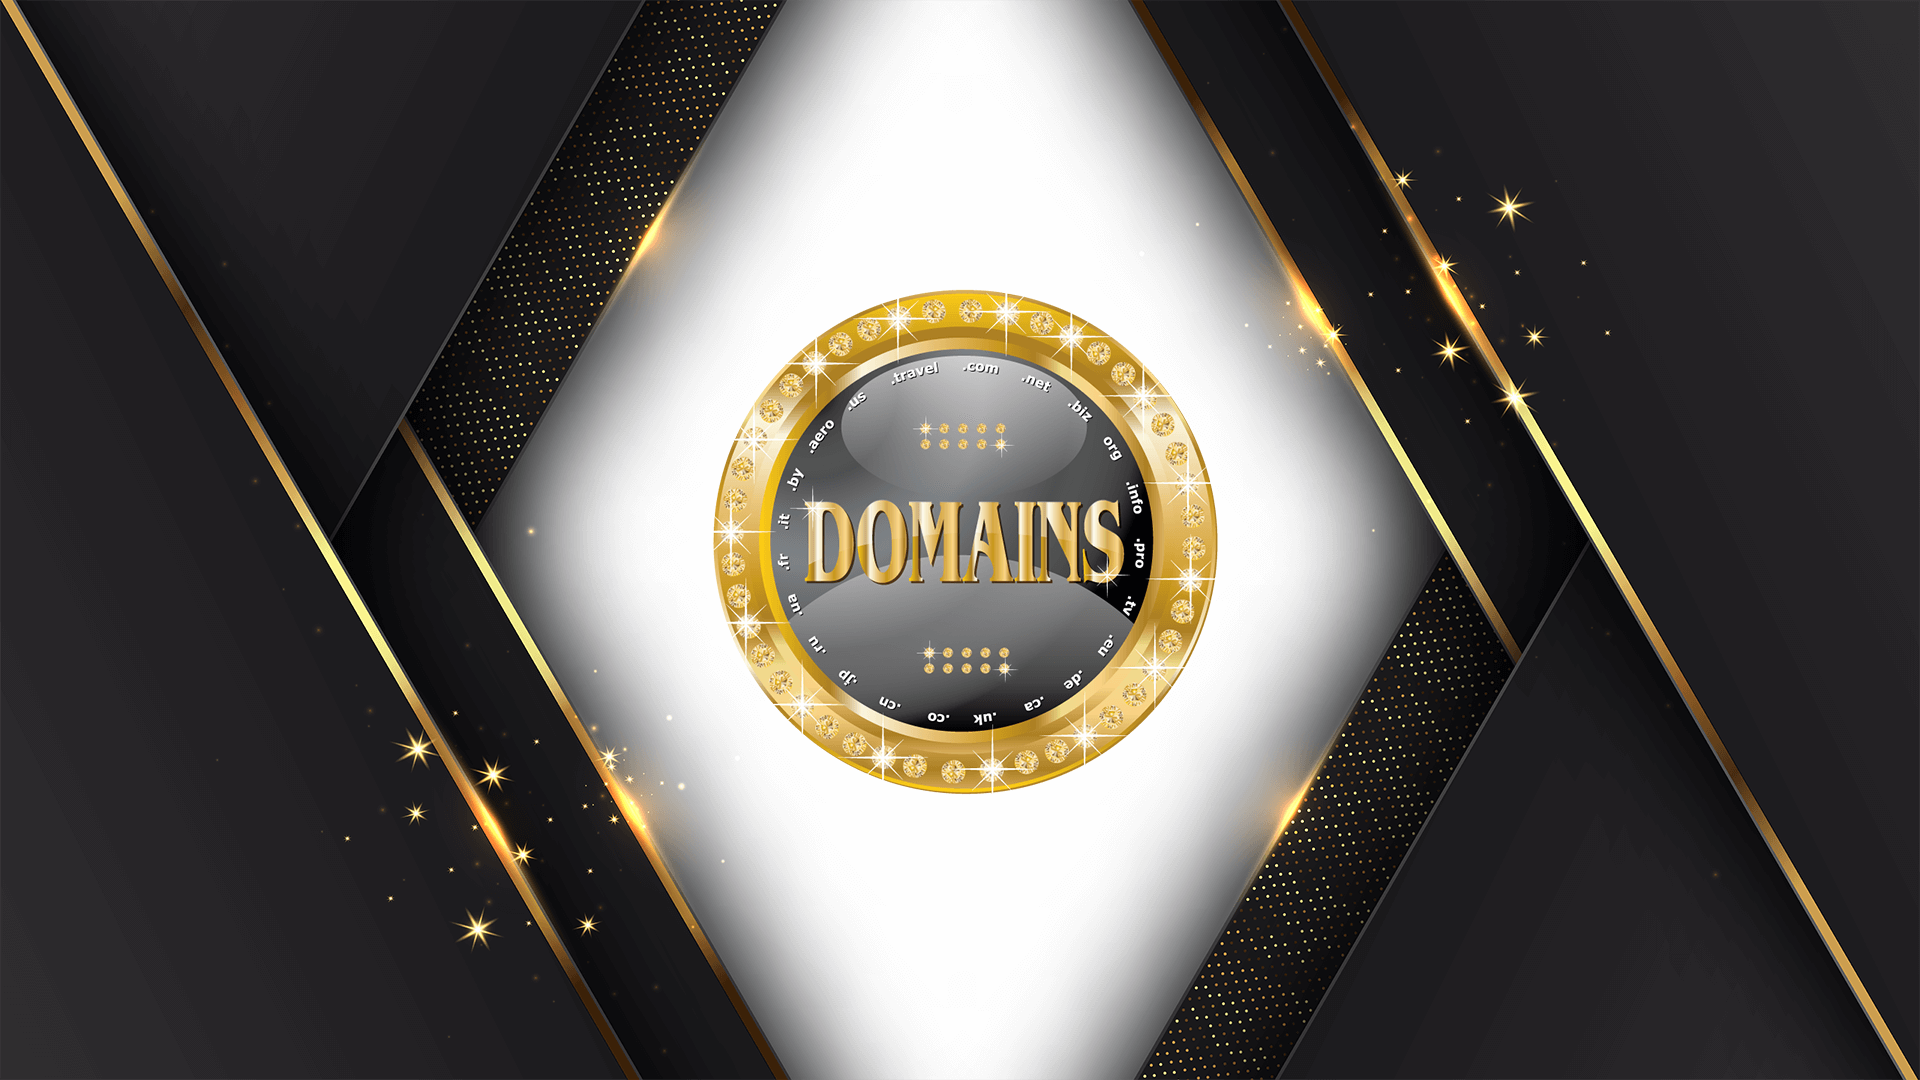 Als Domainprovider bieten wir Ihnen den vollen Umfang rund um Domains. Domainregistrierung, -verwaltung, -umzug, -verkauf und Domainberatung.